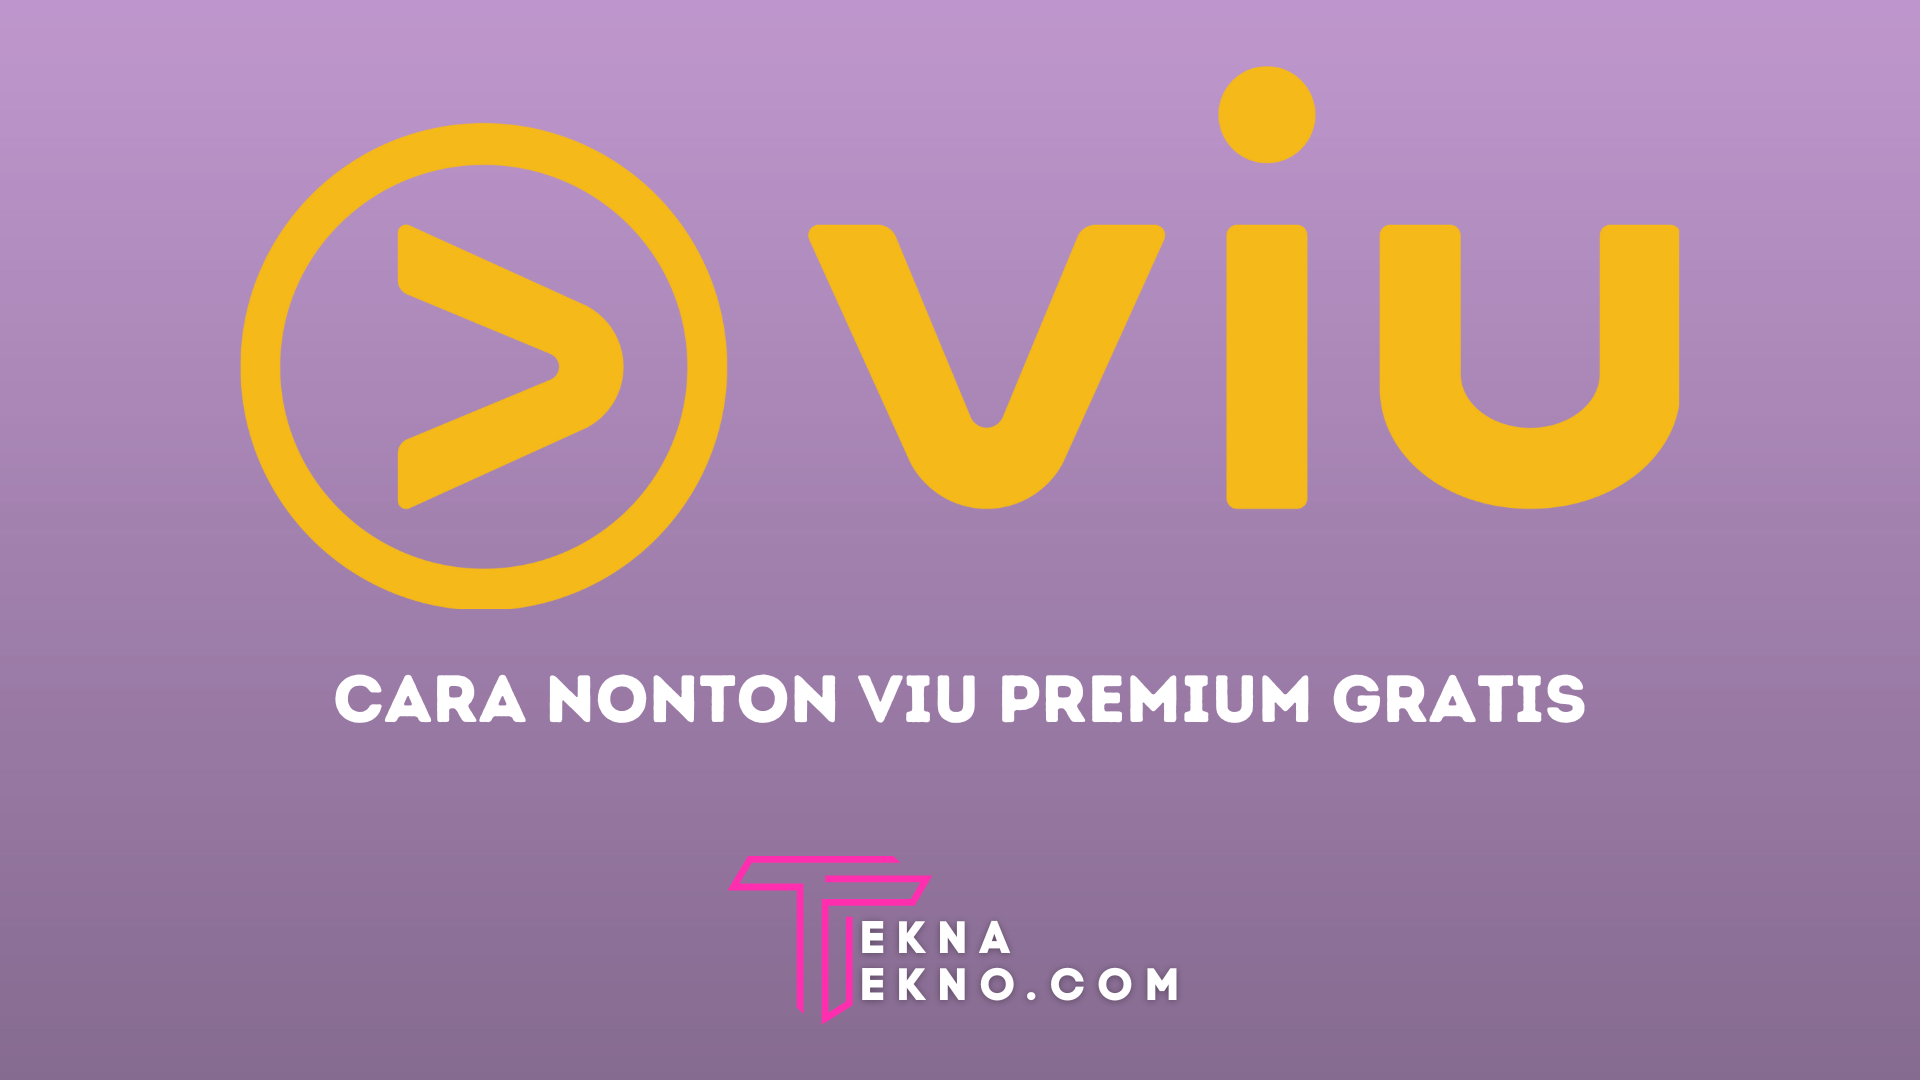 2 Cara Nonton Film Gratis di VIU Premium Untuk Android dan iOS, Hiburan Seru Tanpa Biaya!